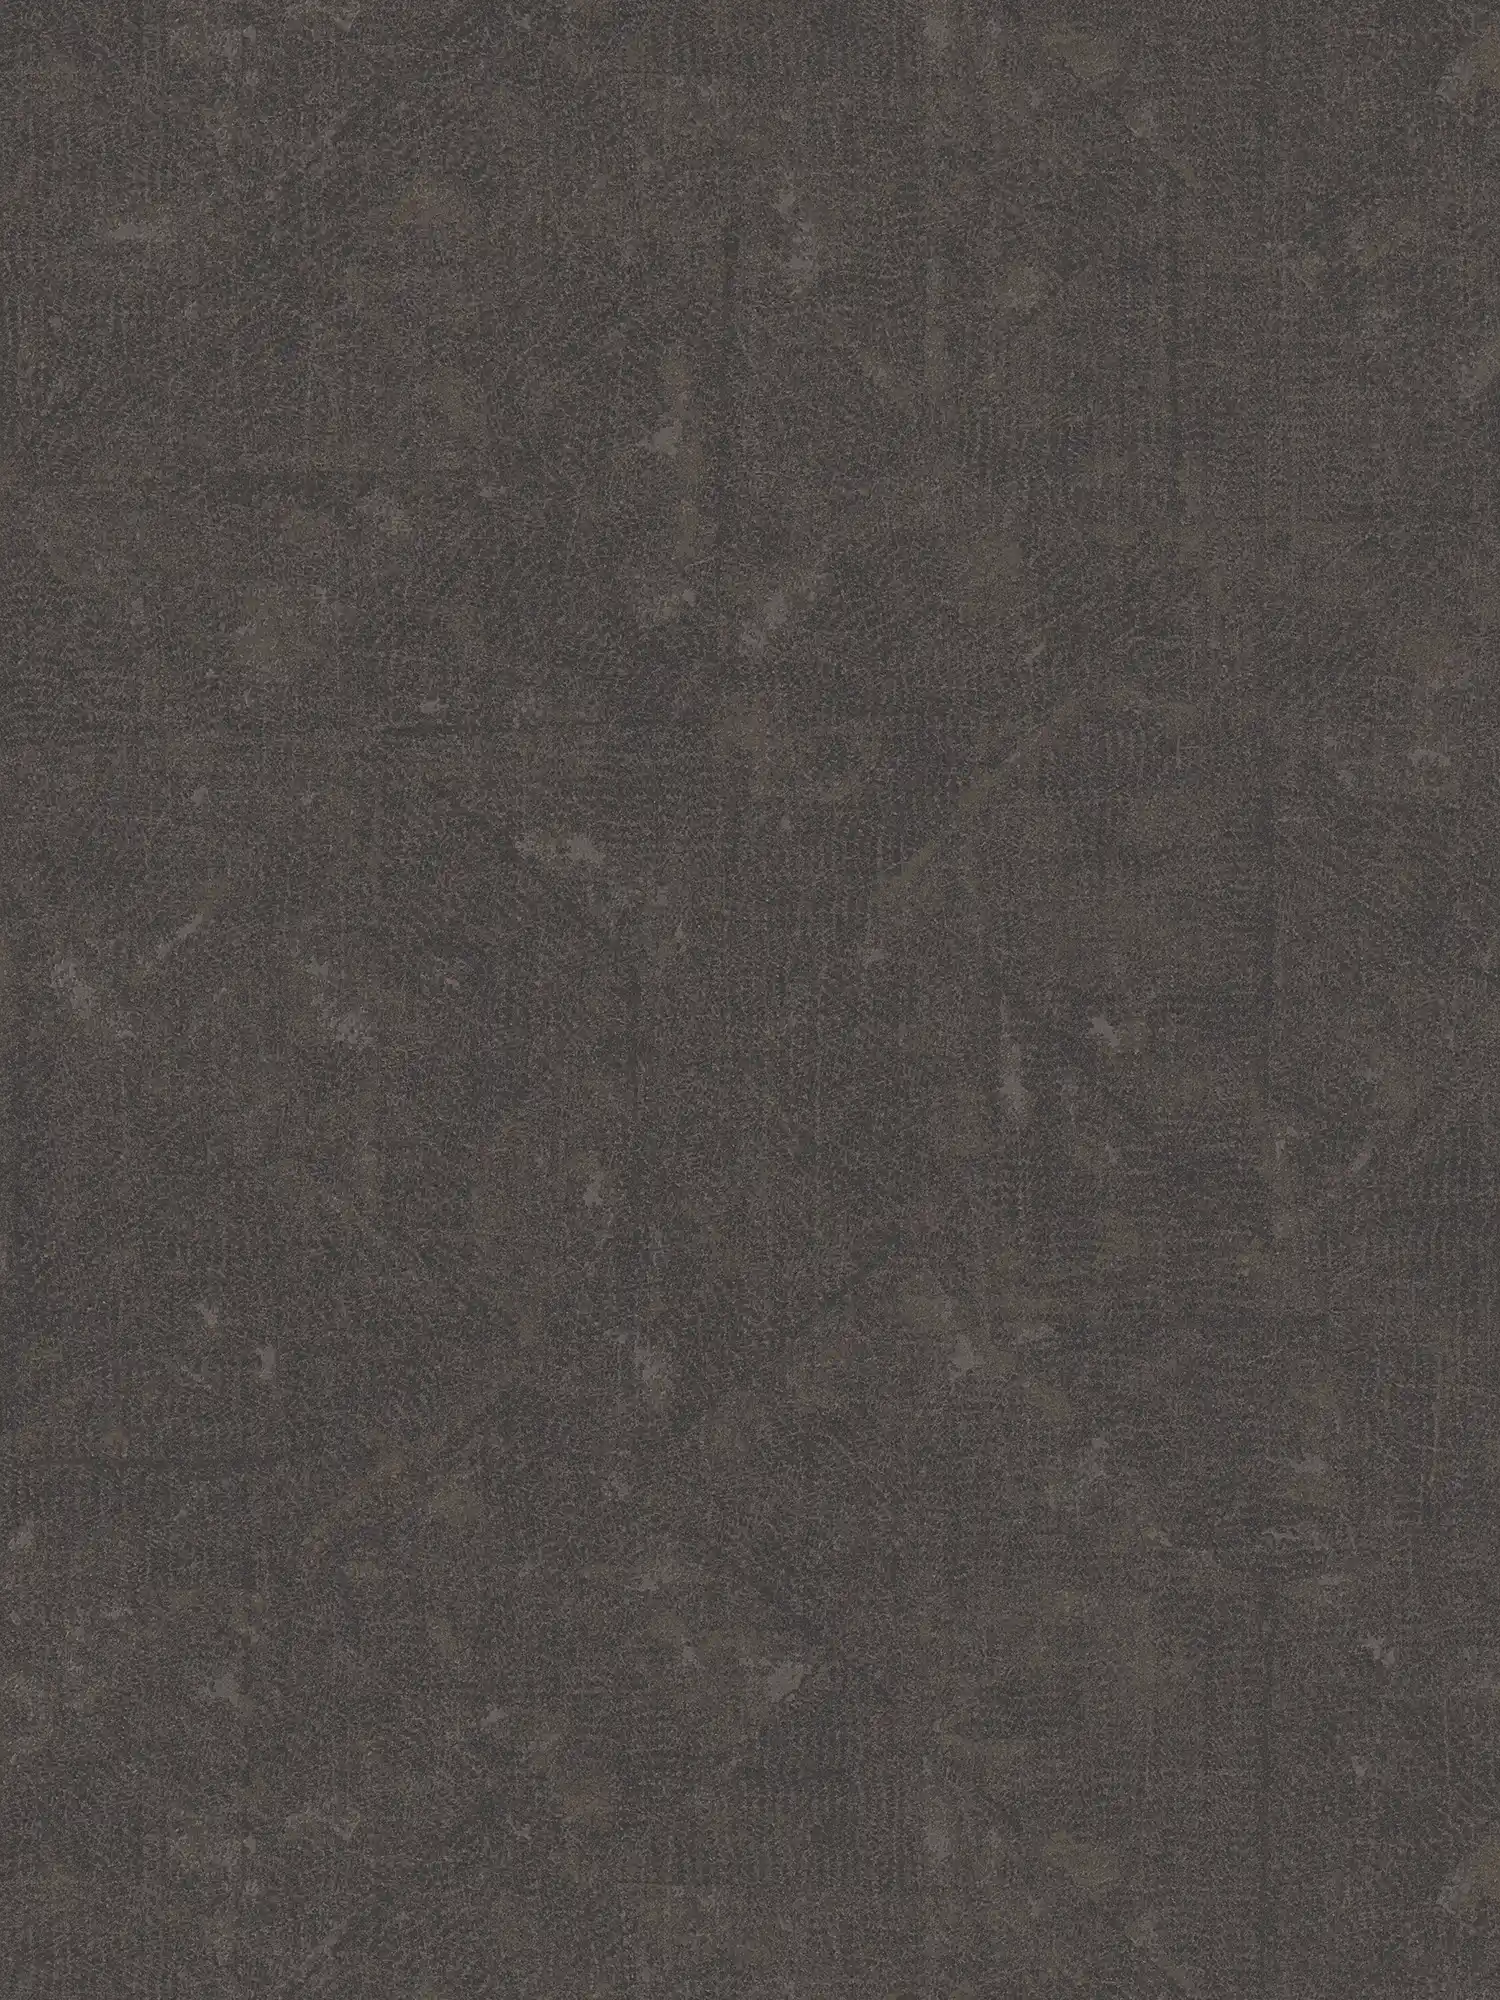 Papier peint intissé marron foncé à motifs subtils - marron, noir, bronze
